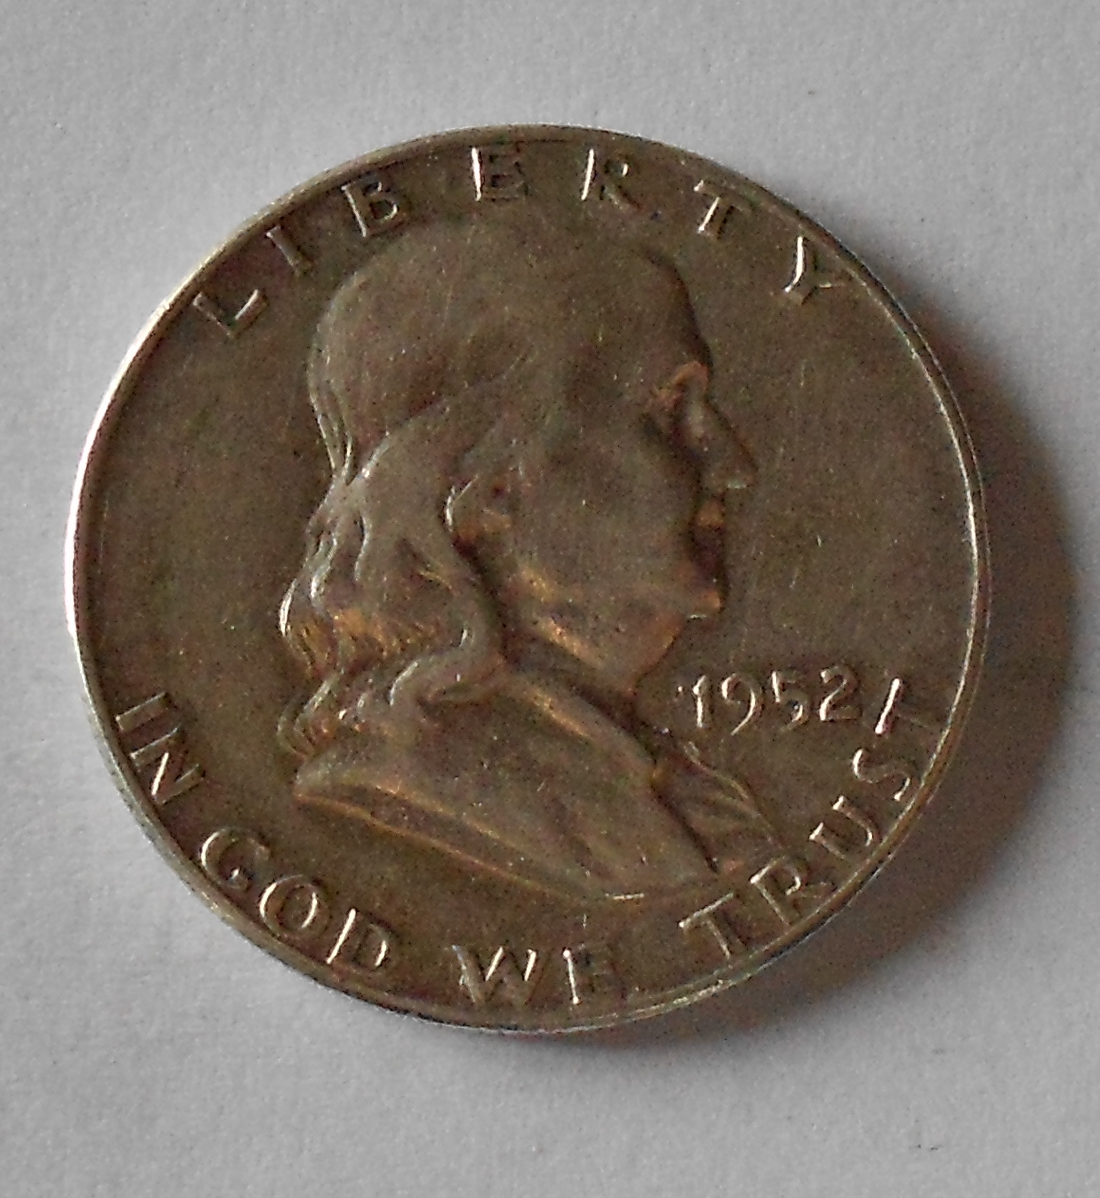 USA 1/2 Dolar 1952